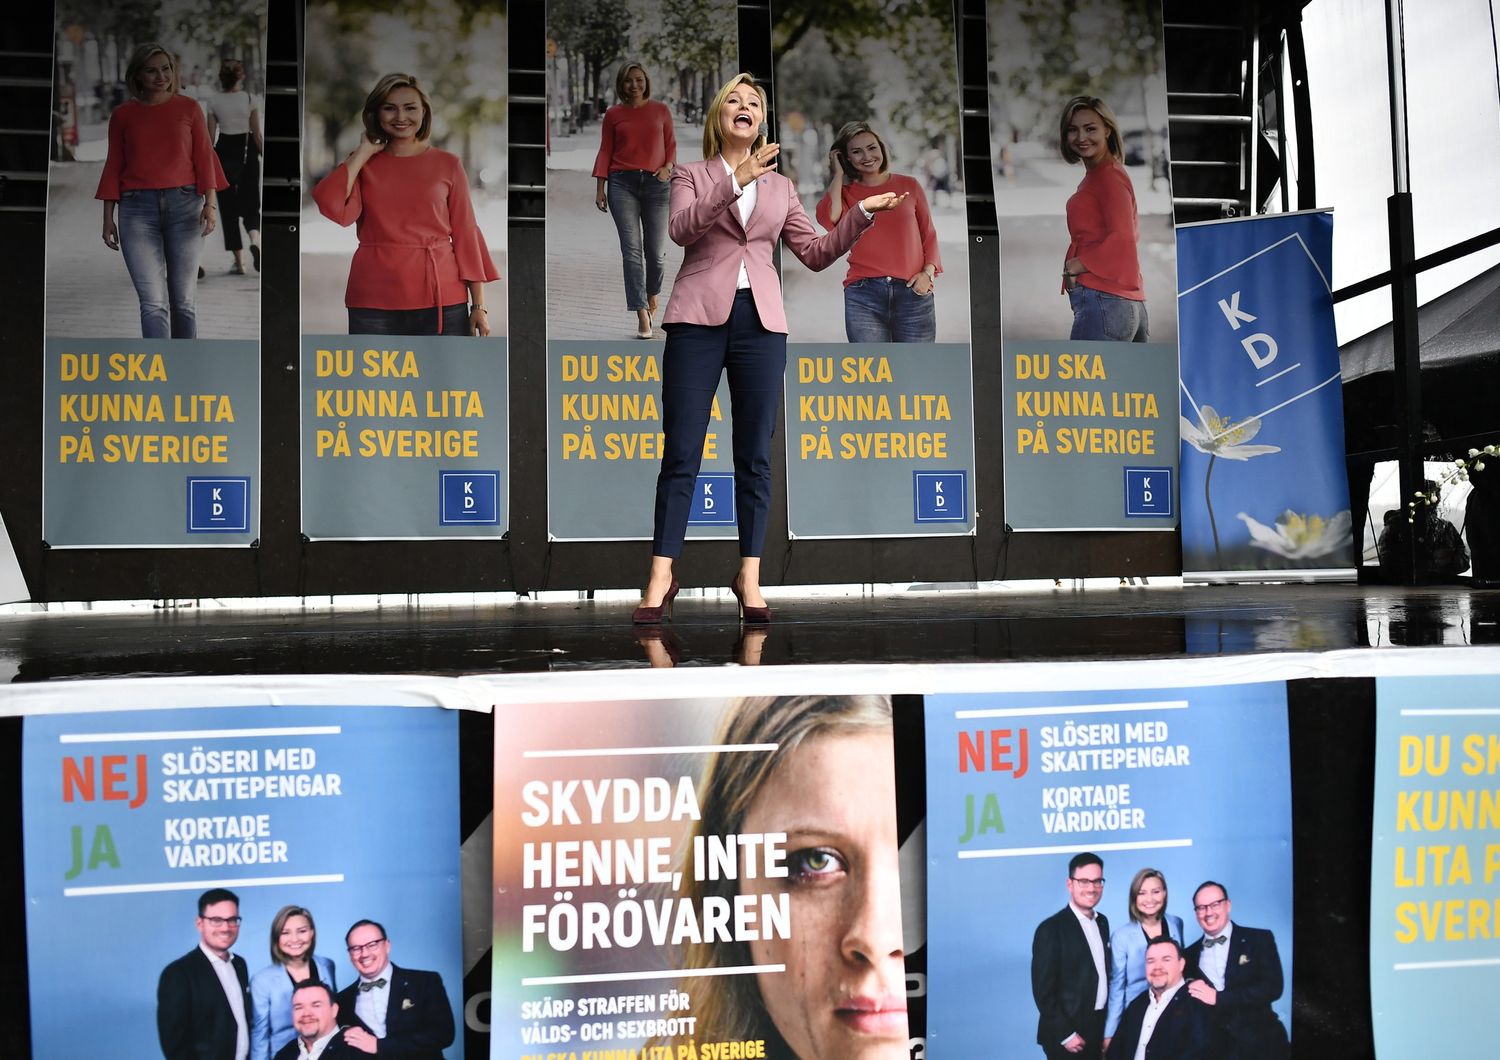 Svezia: seggi aperti fino alle 20, 7 milioni di persone al voto per eleggere 349 membri del&nbsp;Riksdag